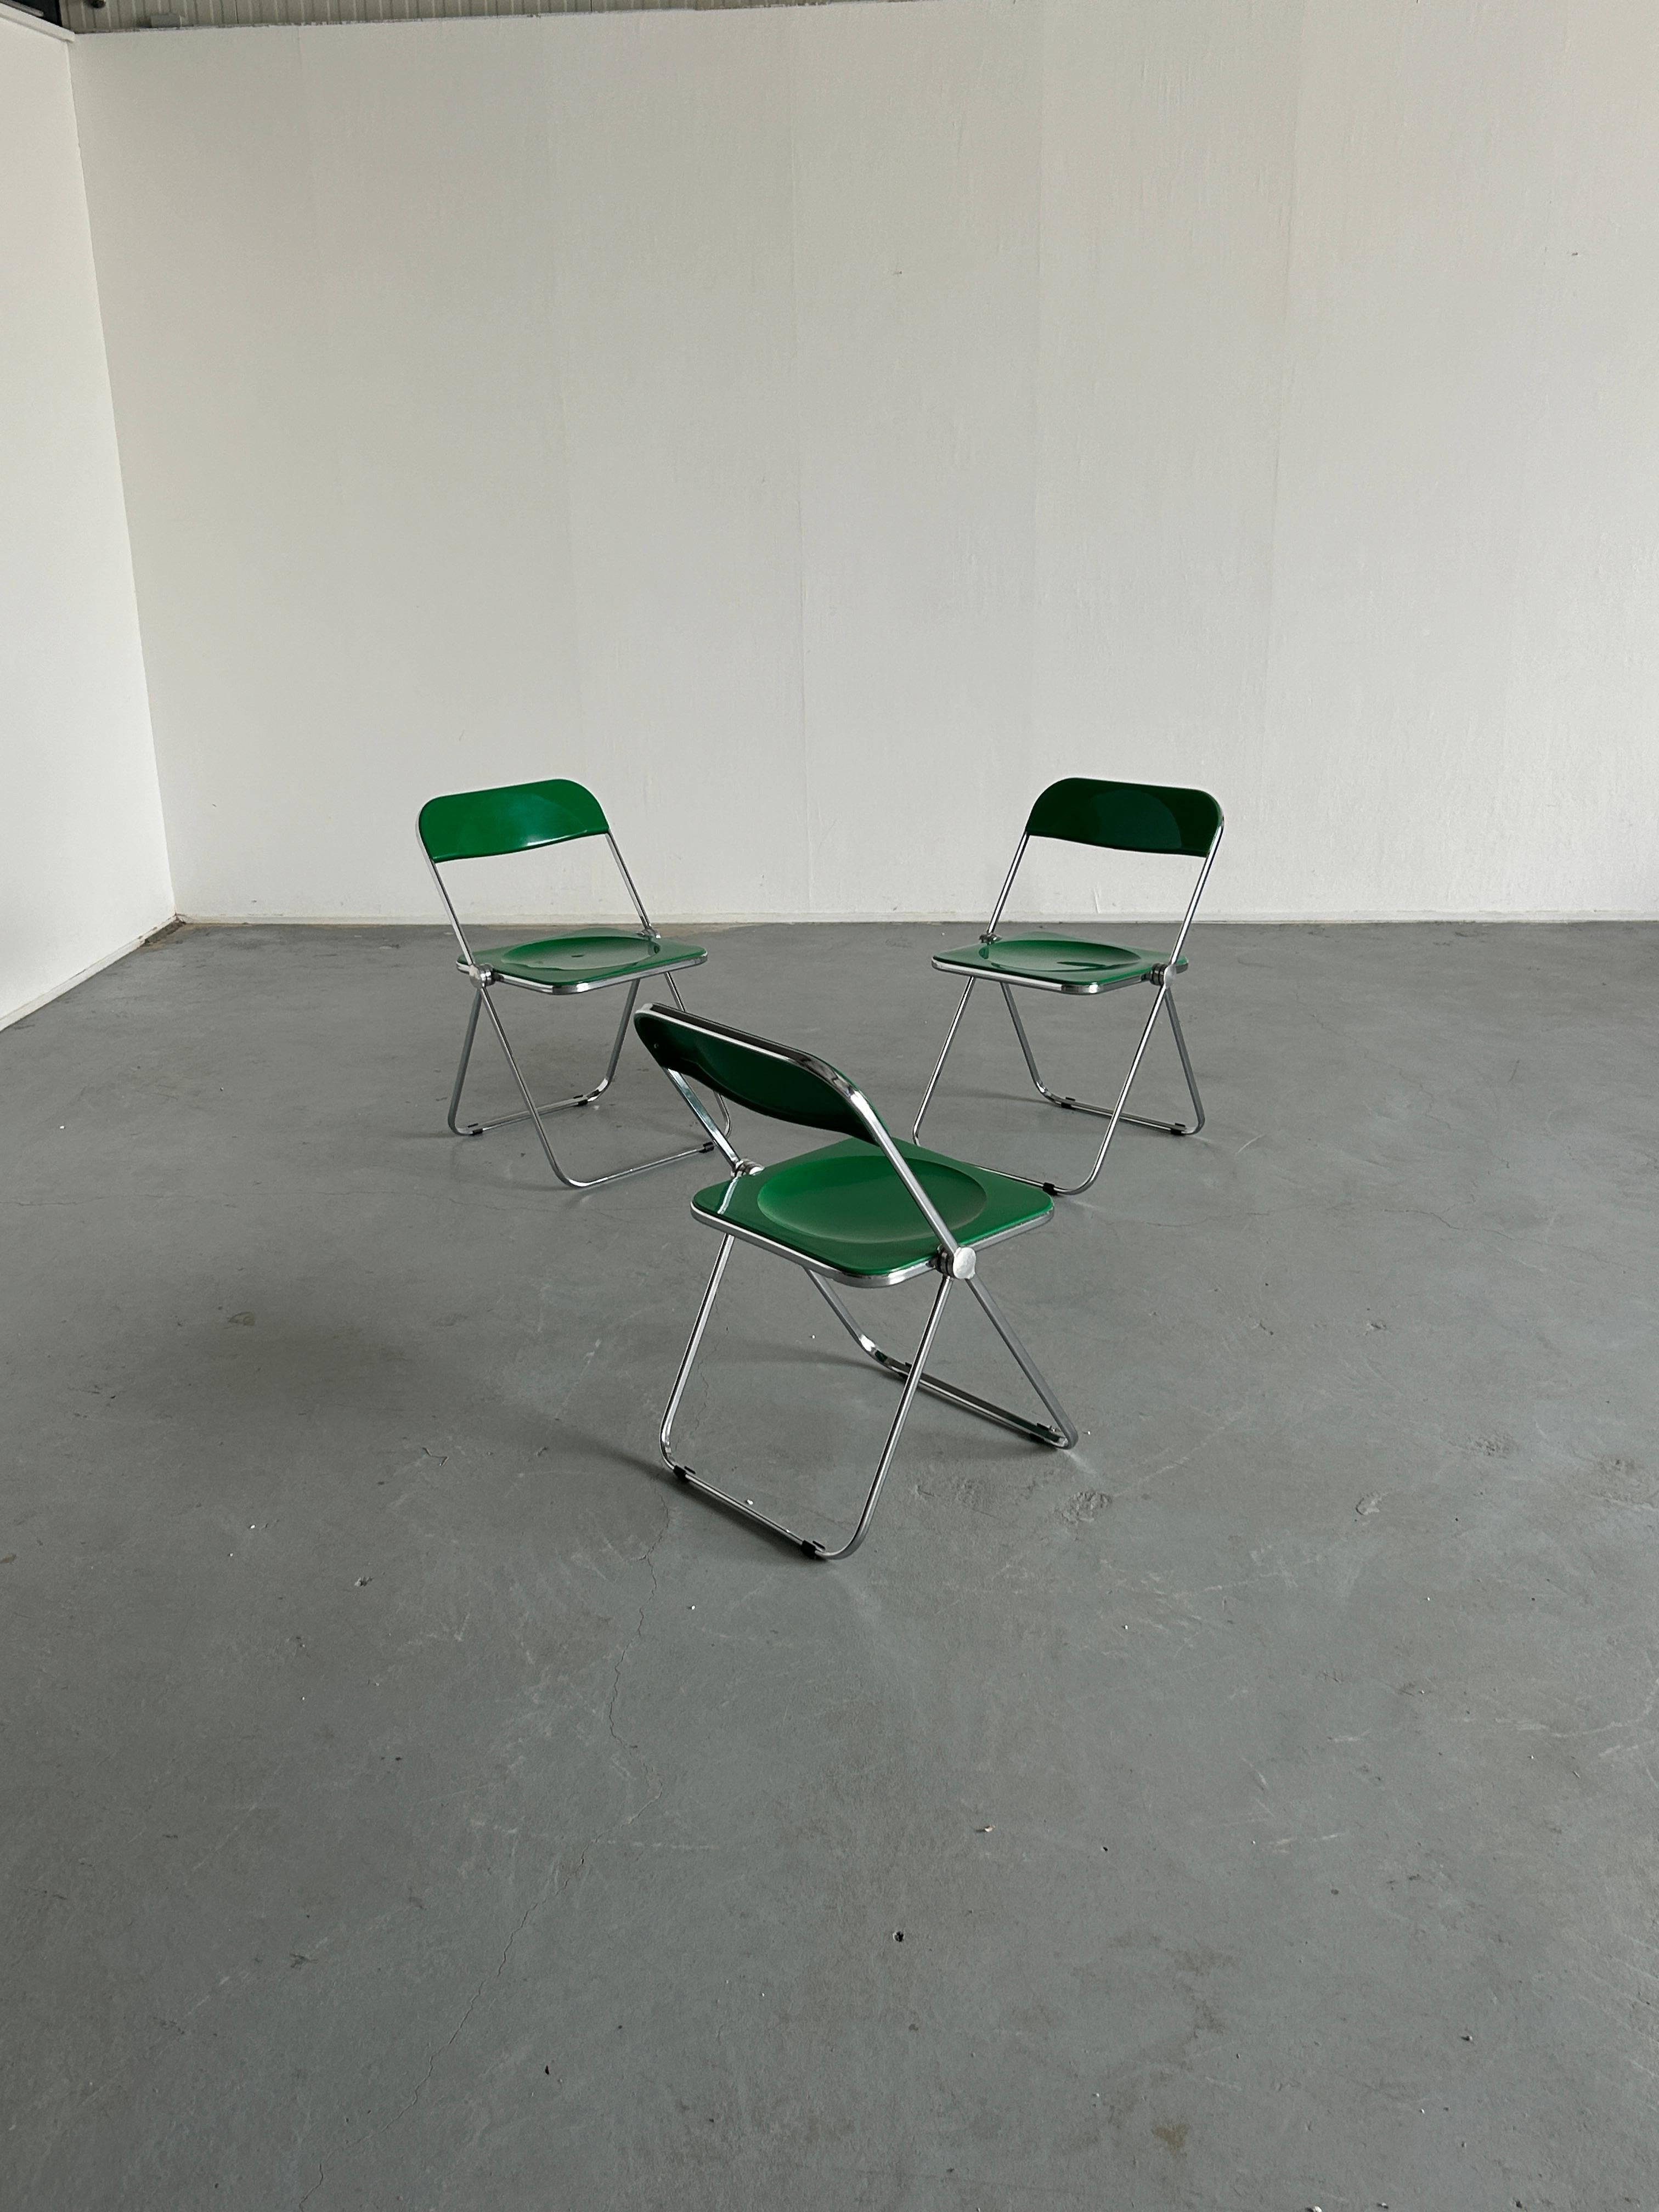 ''Das Symbol einer neuen Ära, die sich auf den Kunststoff konzentriert.'' So wurde der Plia-Stuhl 1967 auf der Fiera del Mobile in Mailand vorgestellt. Entworfen von Giancarlo Piretti für Anonima Castelli, Italien.

Das Gestell besteht aus